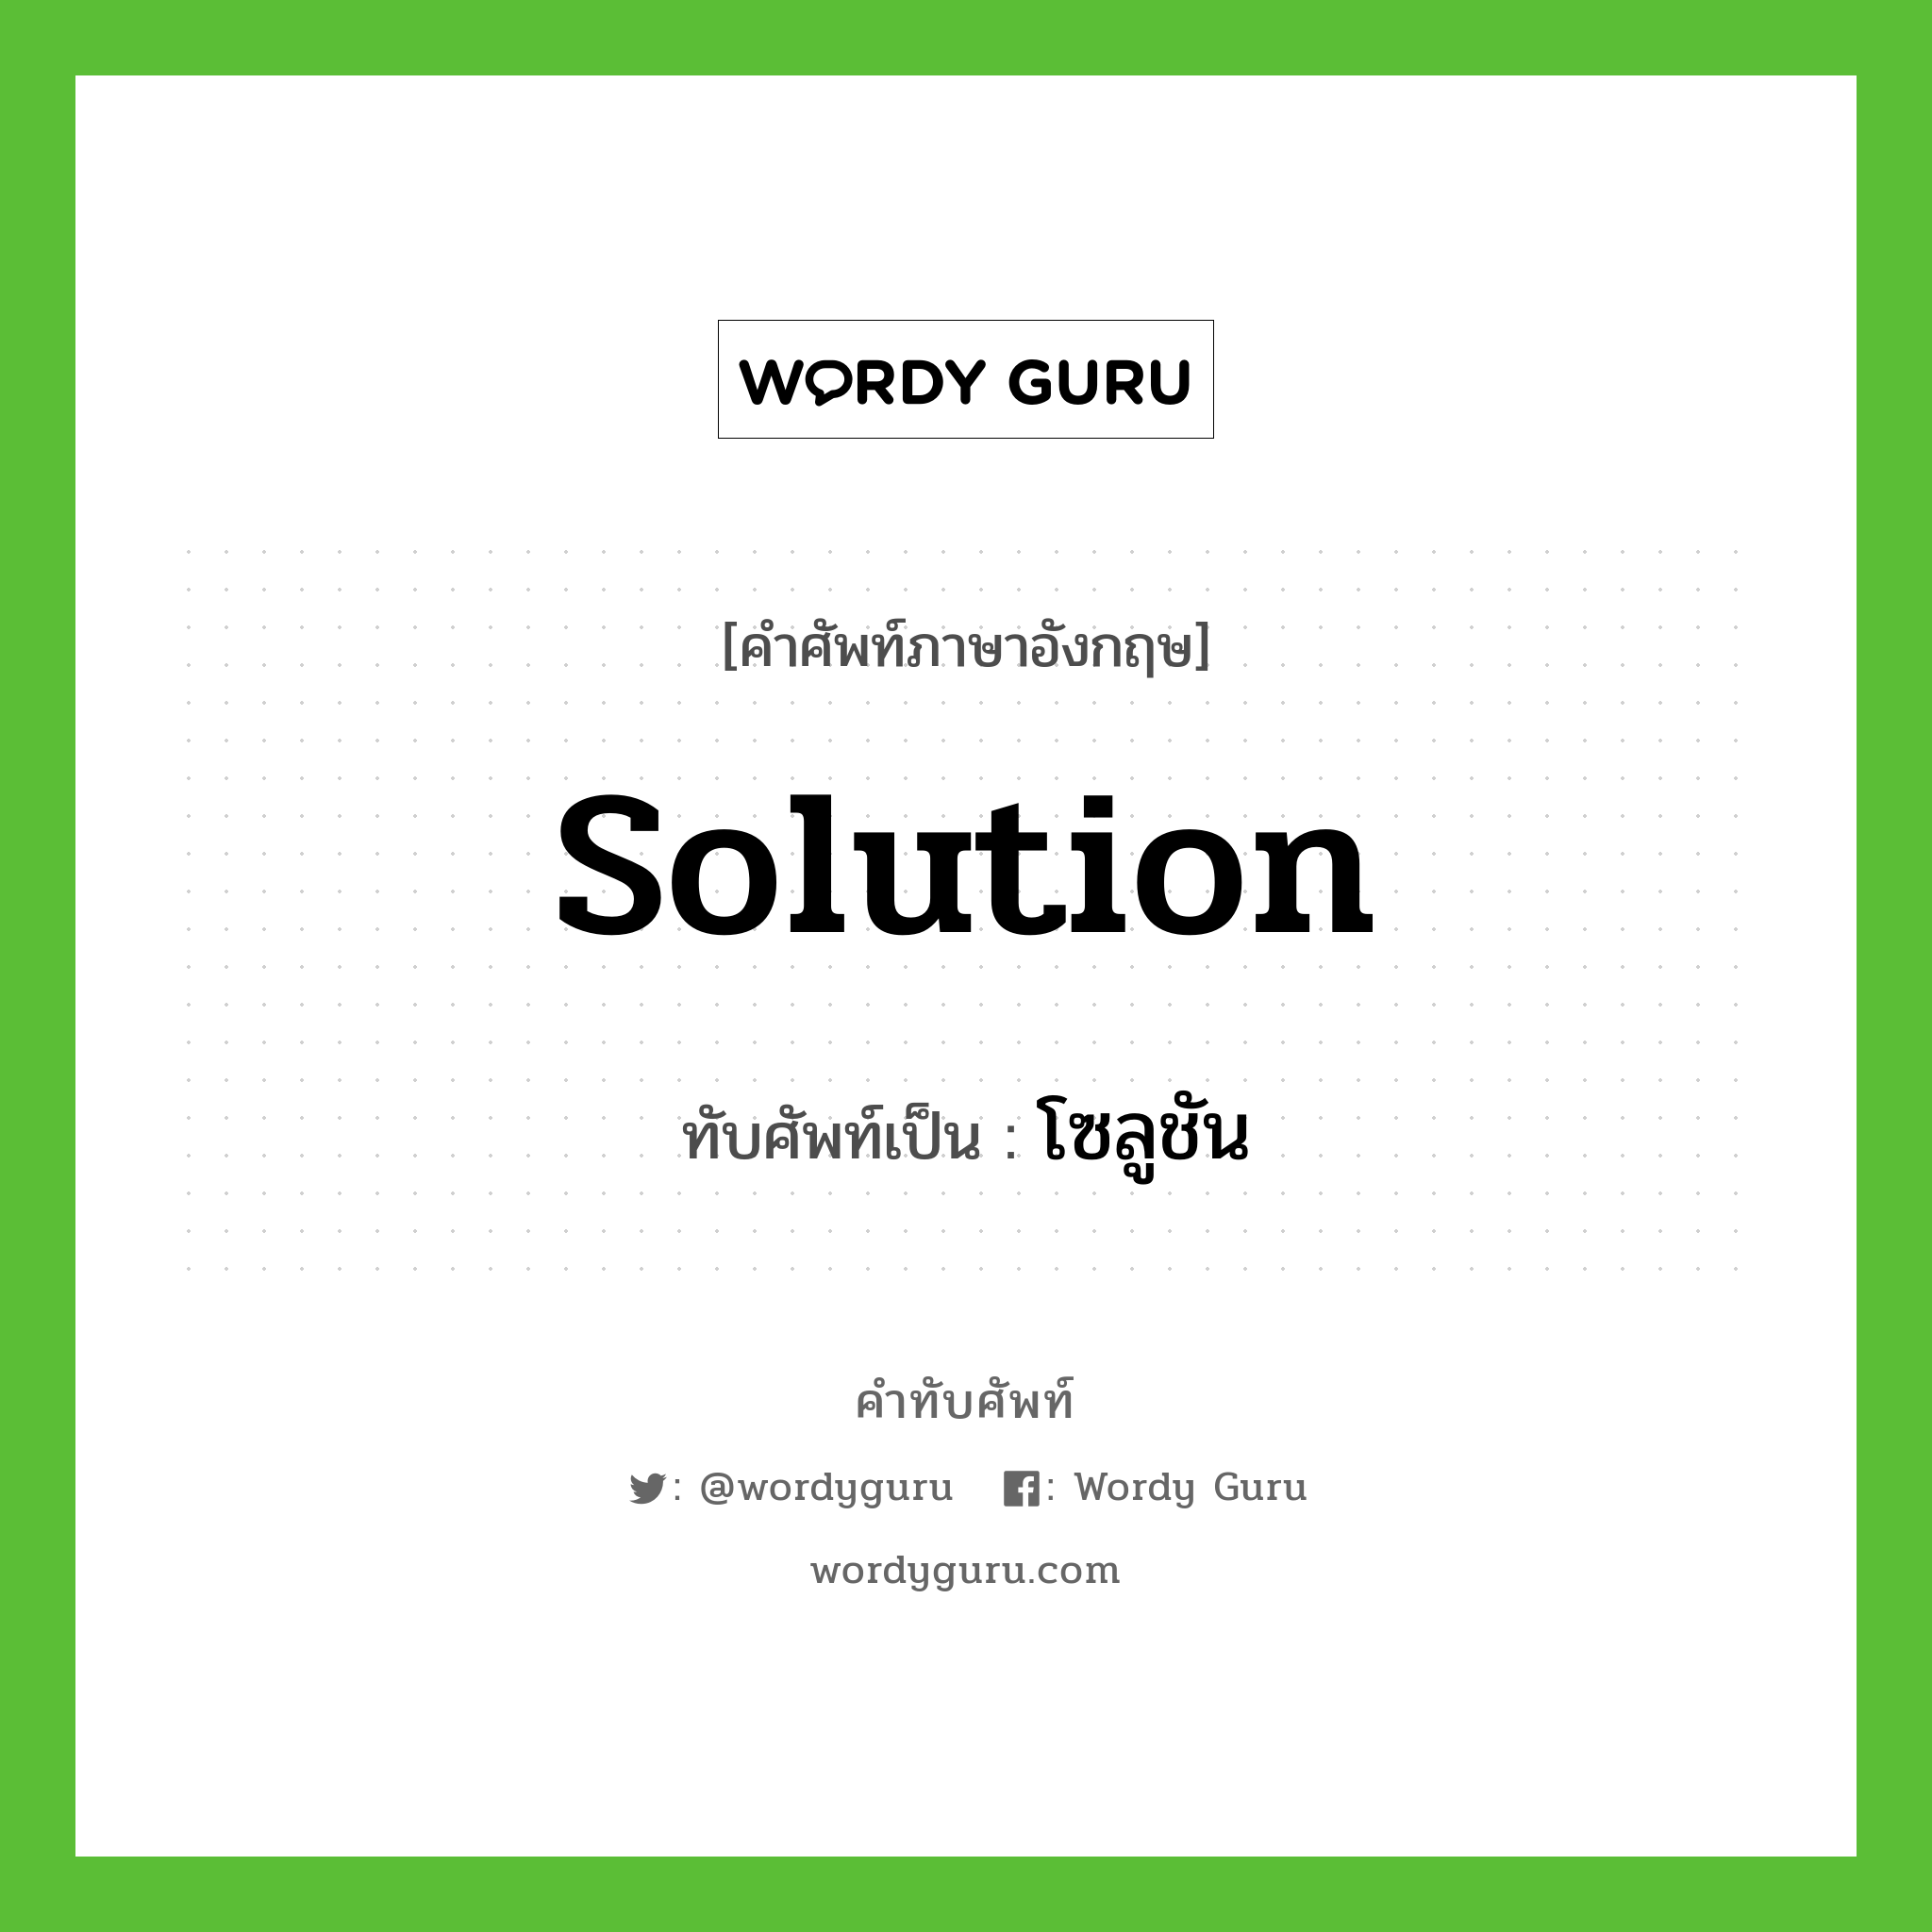 Solution เขียนเป็นคำไทยว่าอะไร?, คำศัพท์ภาษาอังกฤษ Solution ทับศัพท์เป็น โซลูชัน